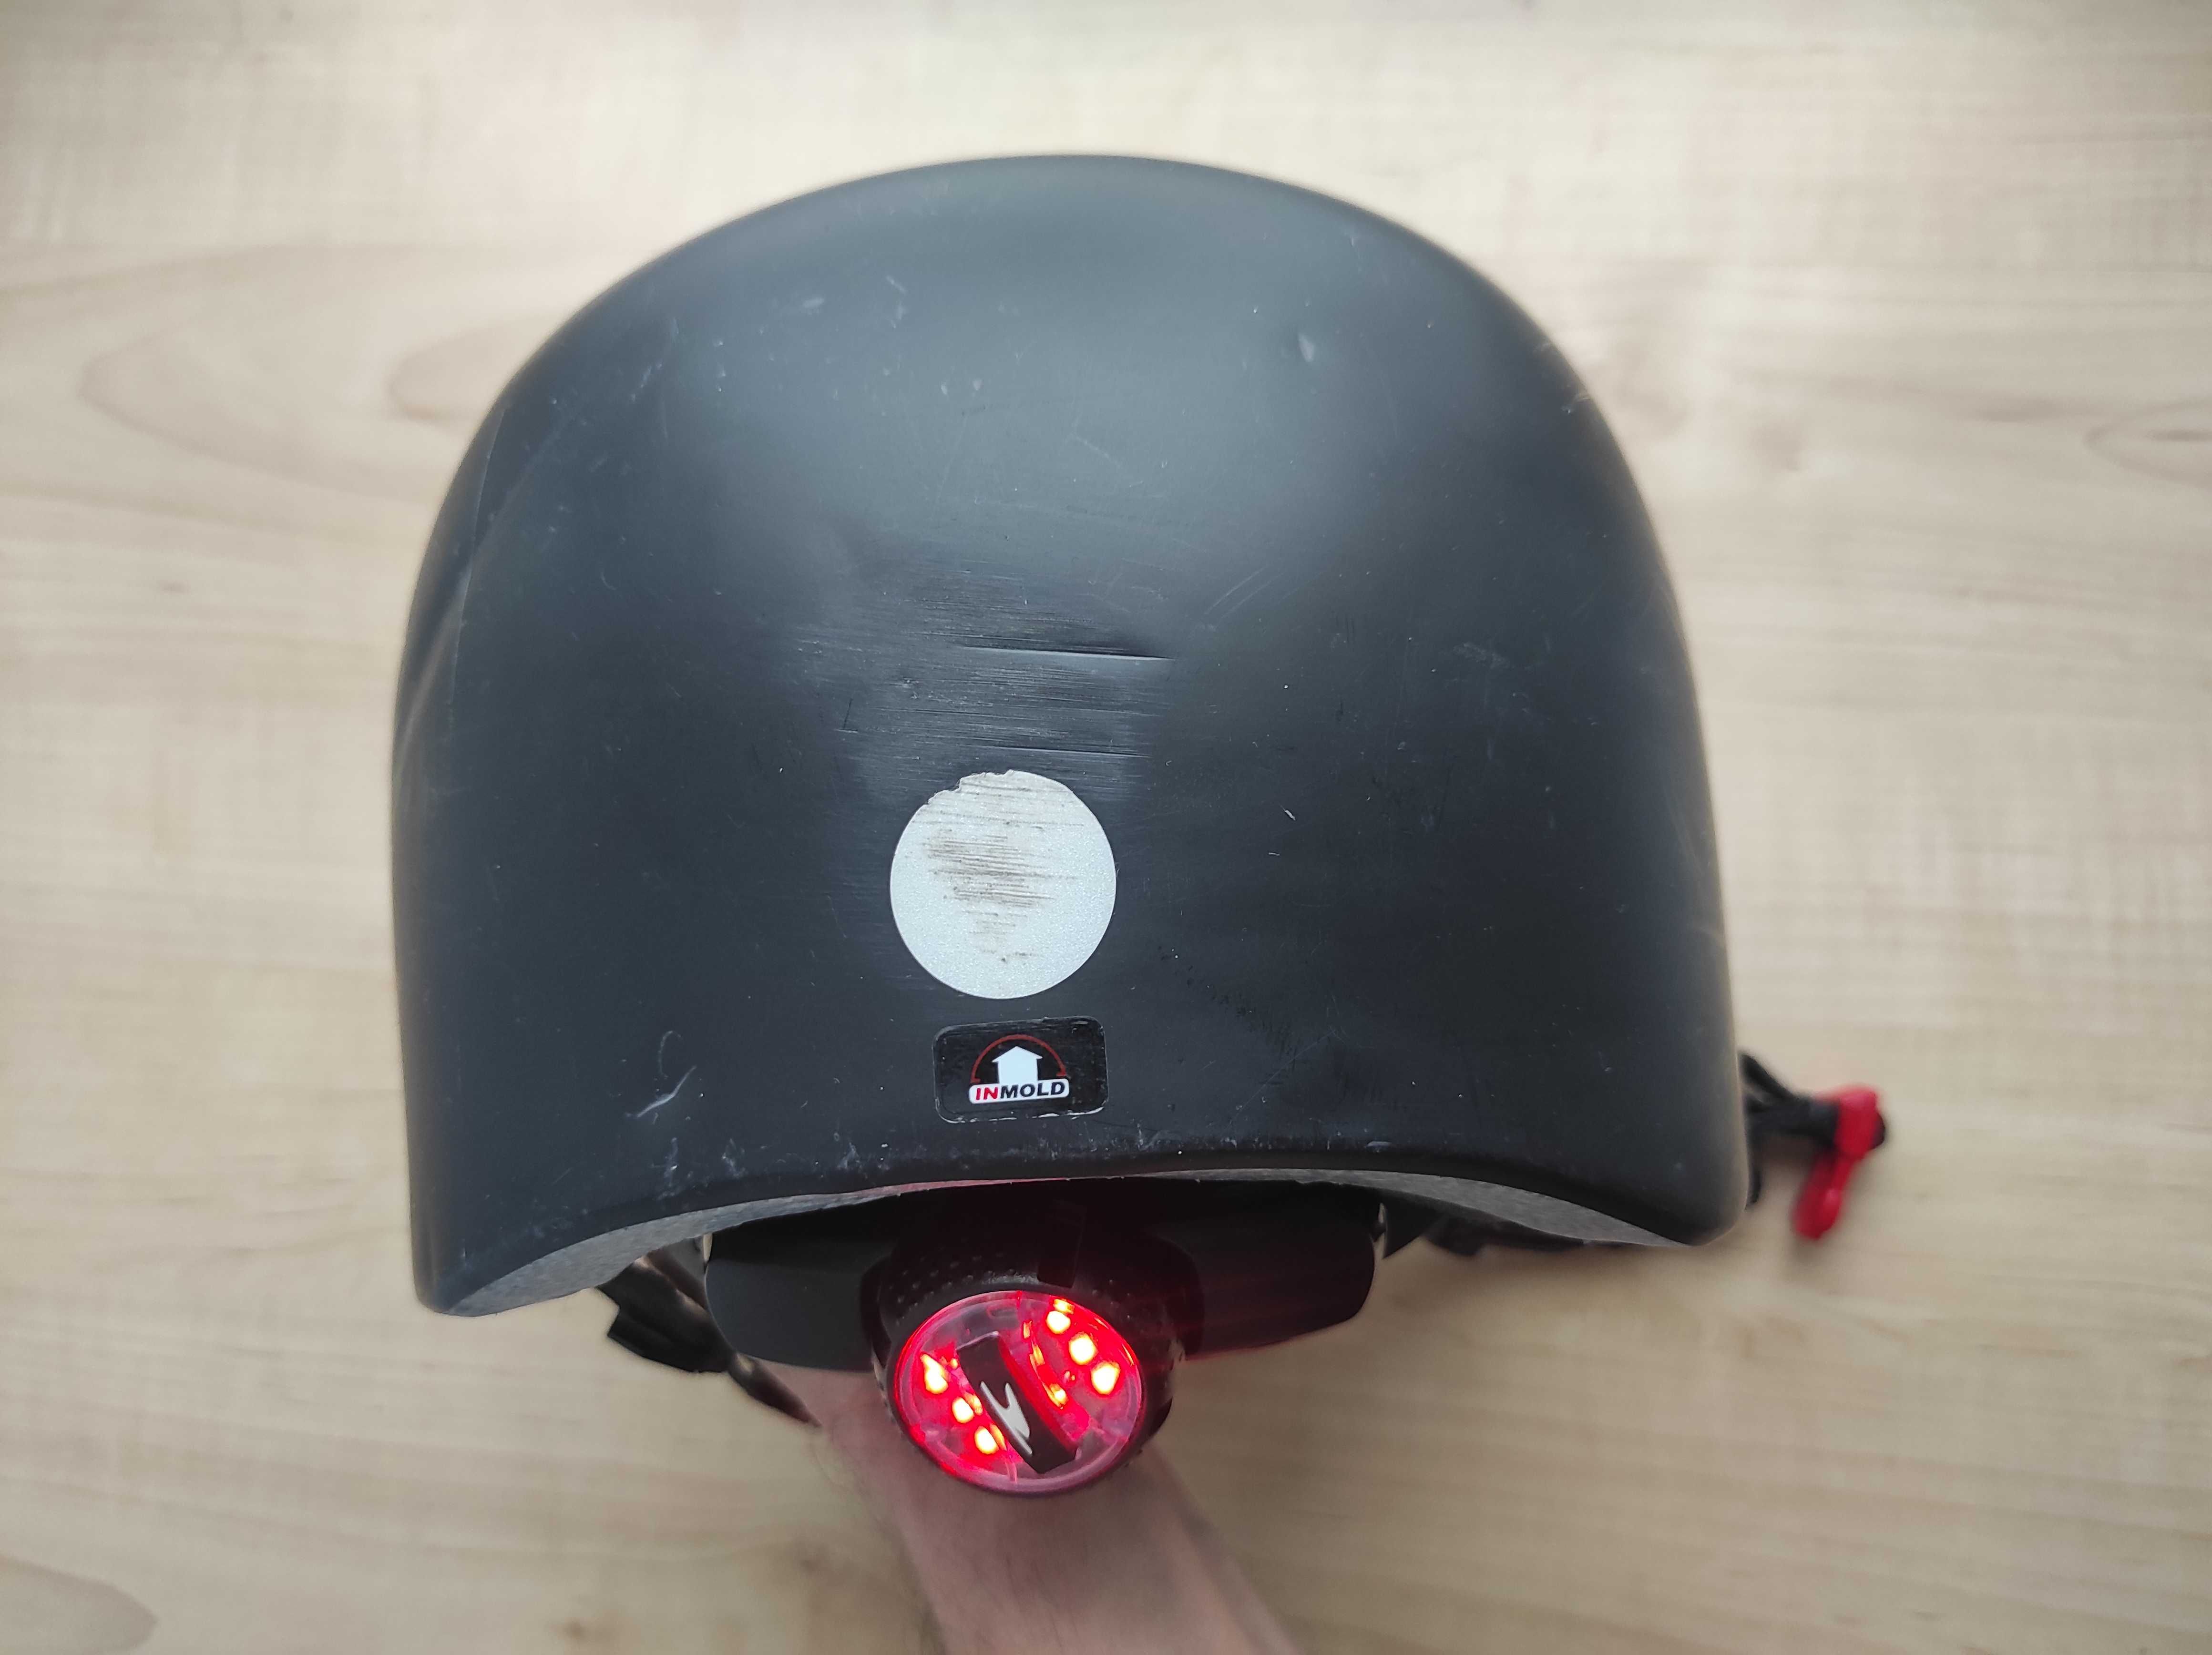 Шлем защитный котелок Speq SP-38, размер 52-56см, Германия, детский